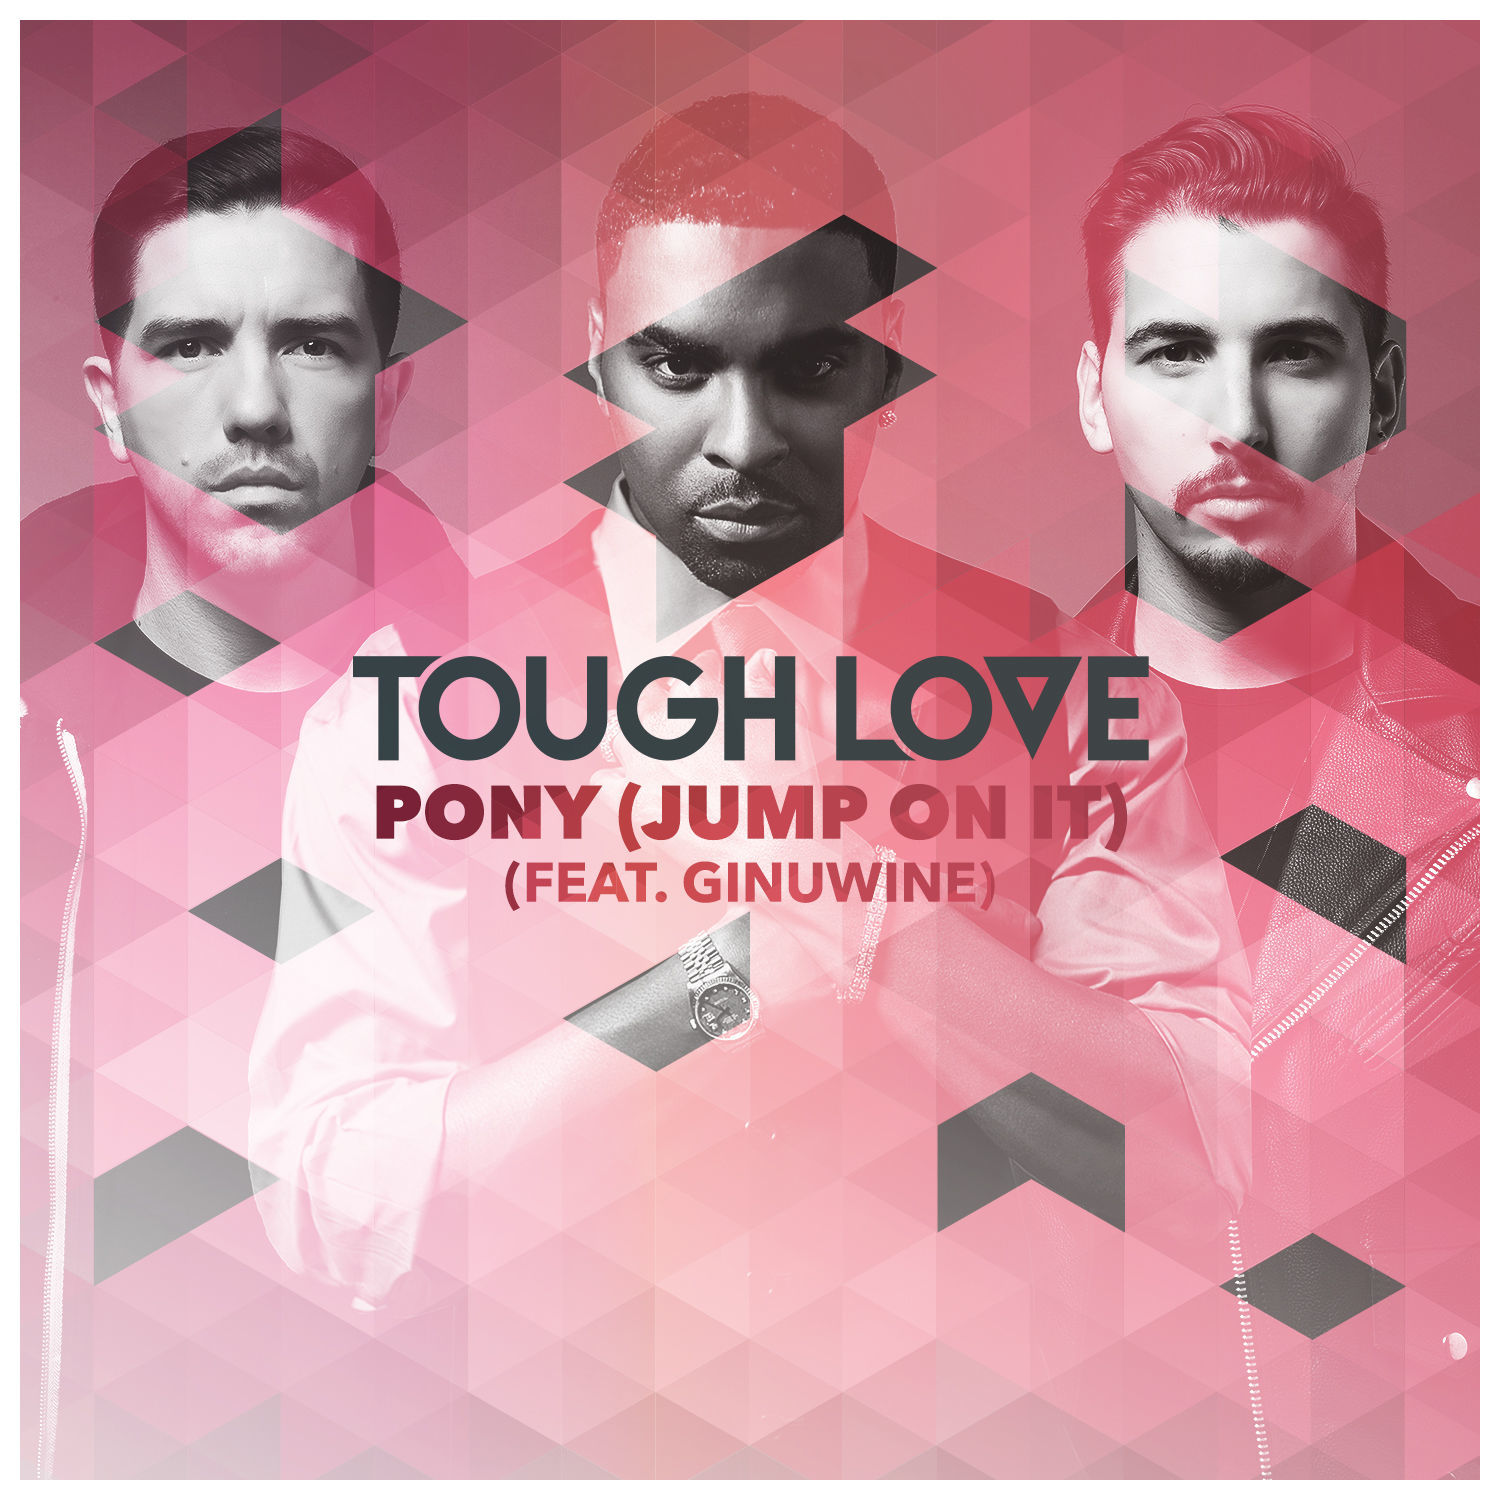 Ginuwine pony. Tough Love. Pony Ginuwine Extended Mix. Tough Love Pony (Jump on it) (feat. Ginuwine) (Extended Mix).